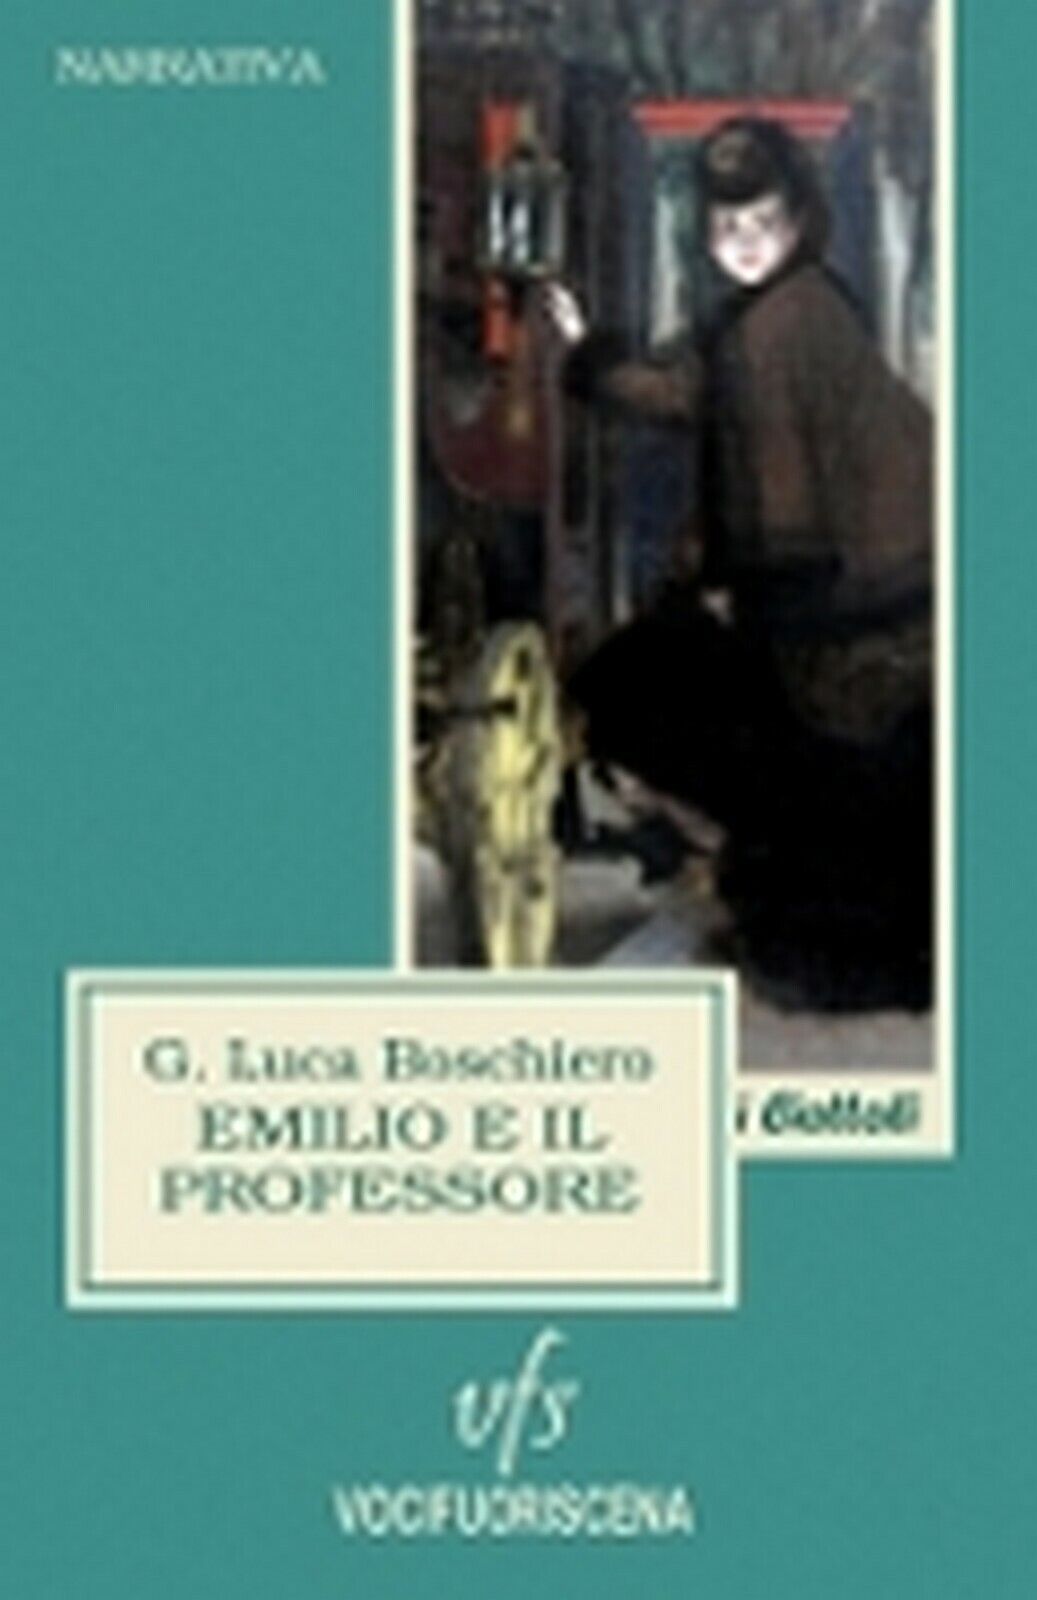 EMILIO E IL PROFESSORE  di G. Luca Boschiero,  2018,  Vocifuoriscena libro usato